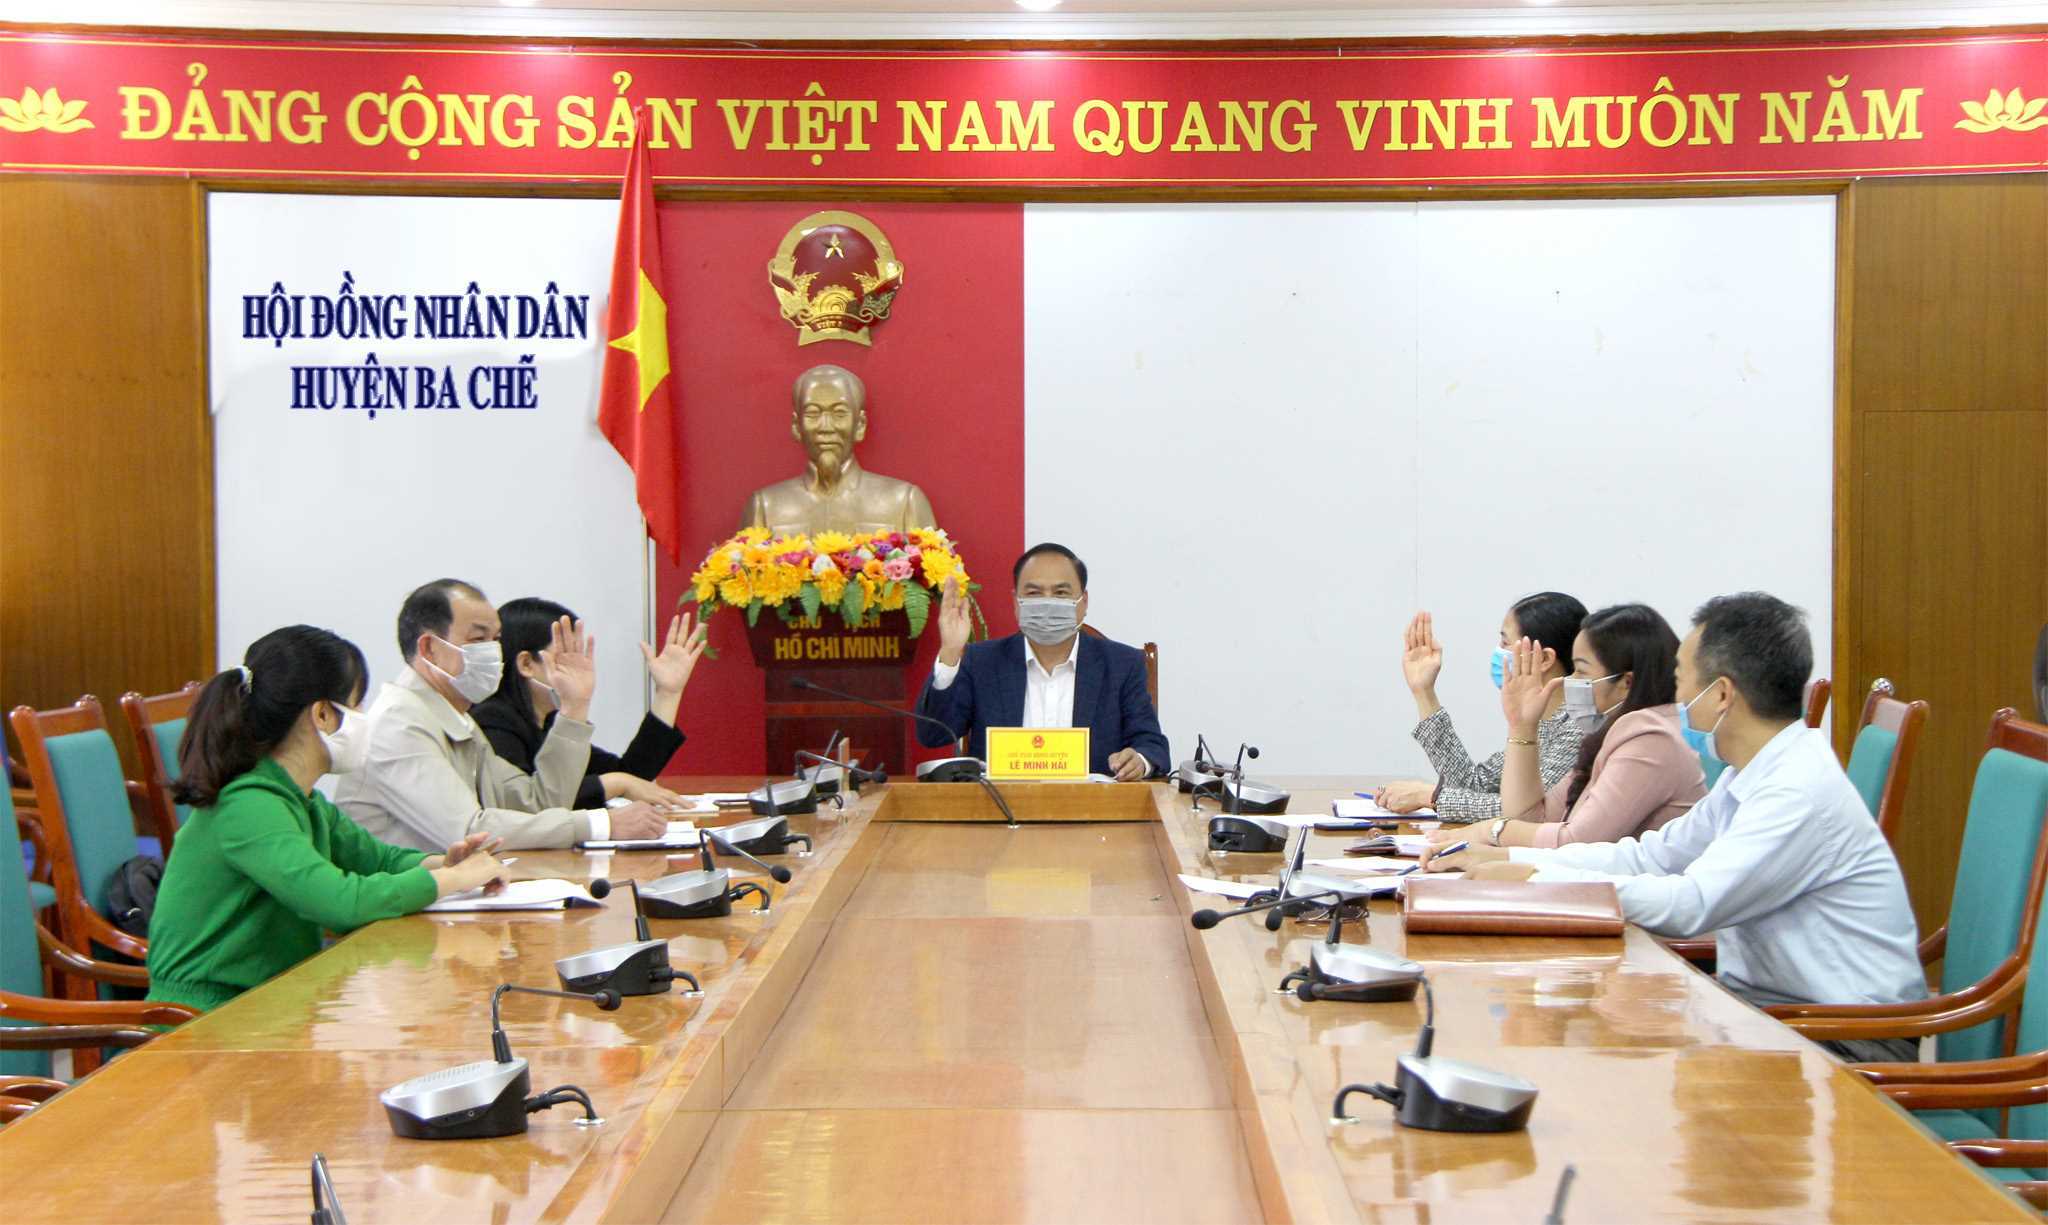 HĐND huyện Ba Chẽ tổ chức hội nghị giới thiệu người ứng cử đại biểu HĐND huyện khoá XX, nhiệm kỳ 2021 - 2026, tháng 2/2201